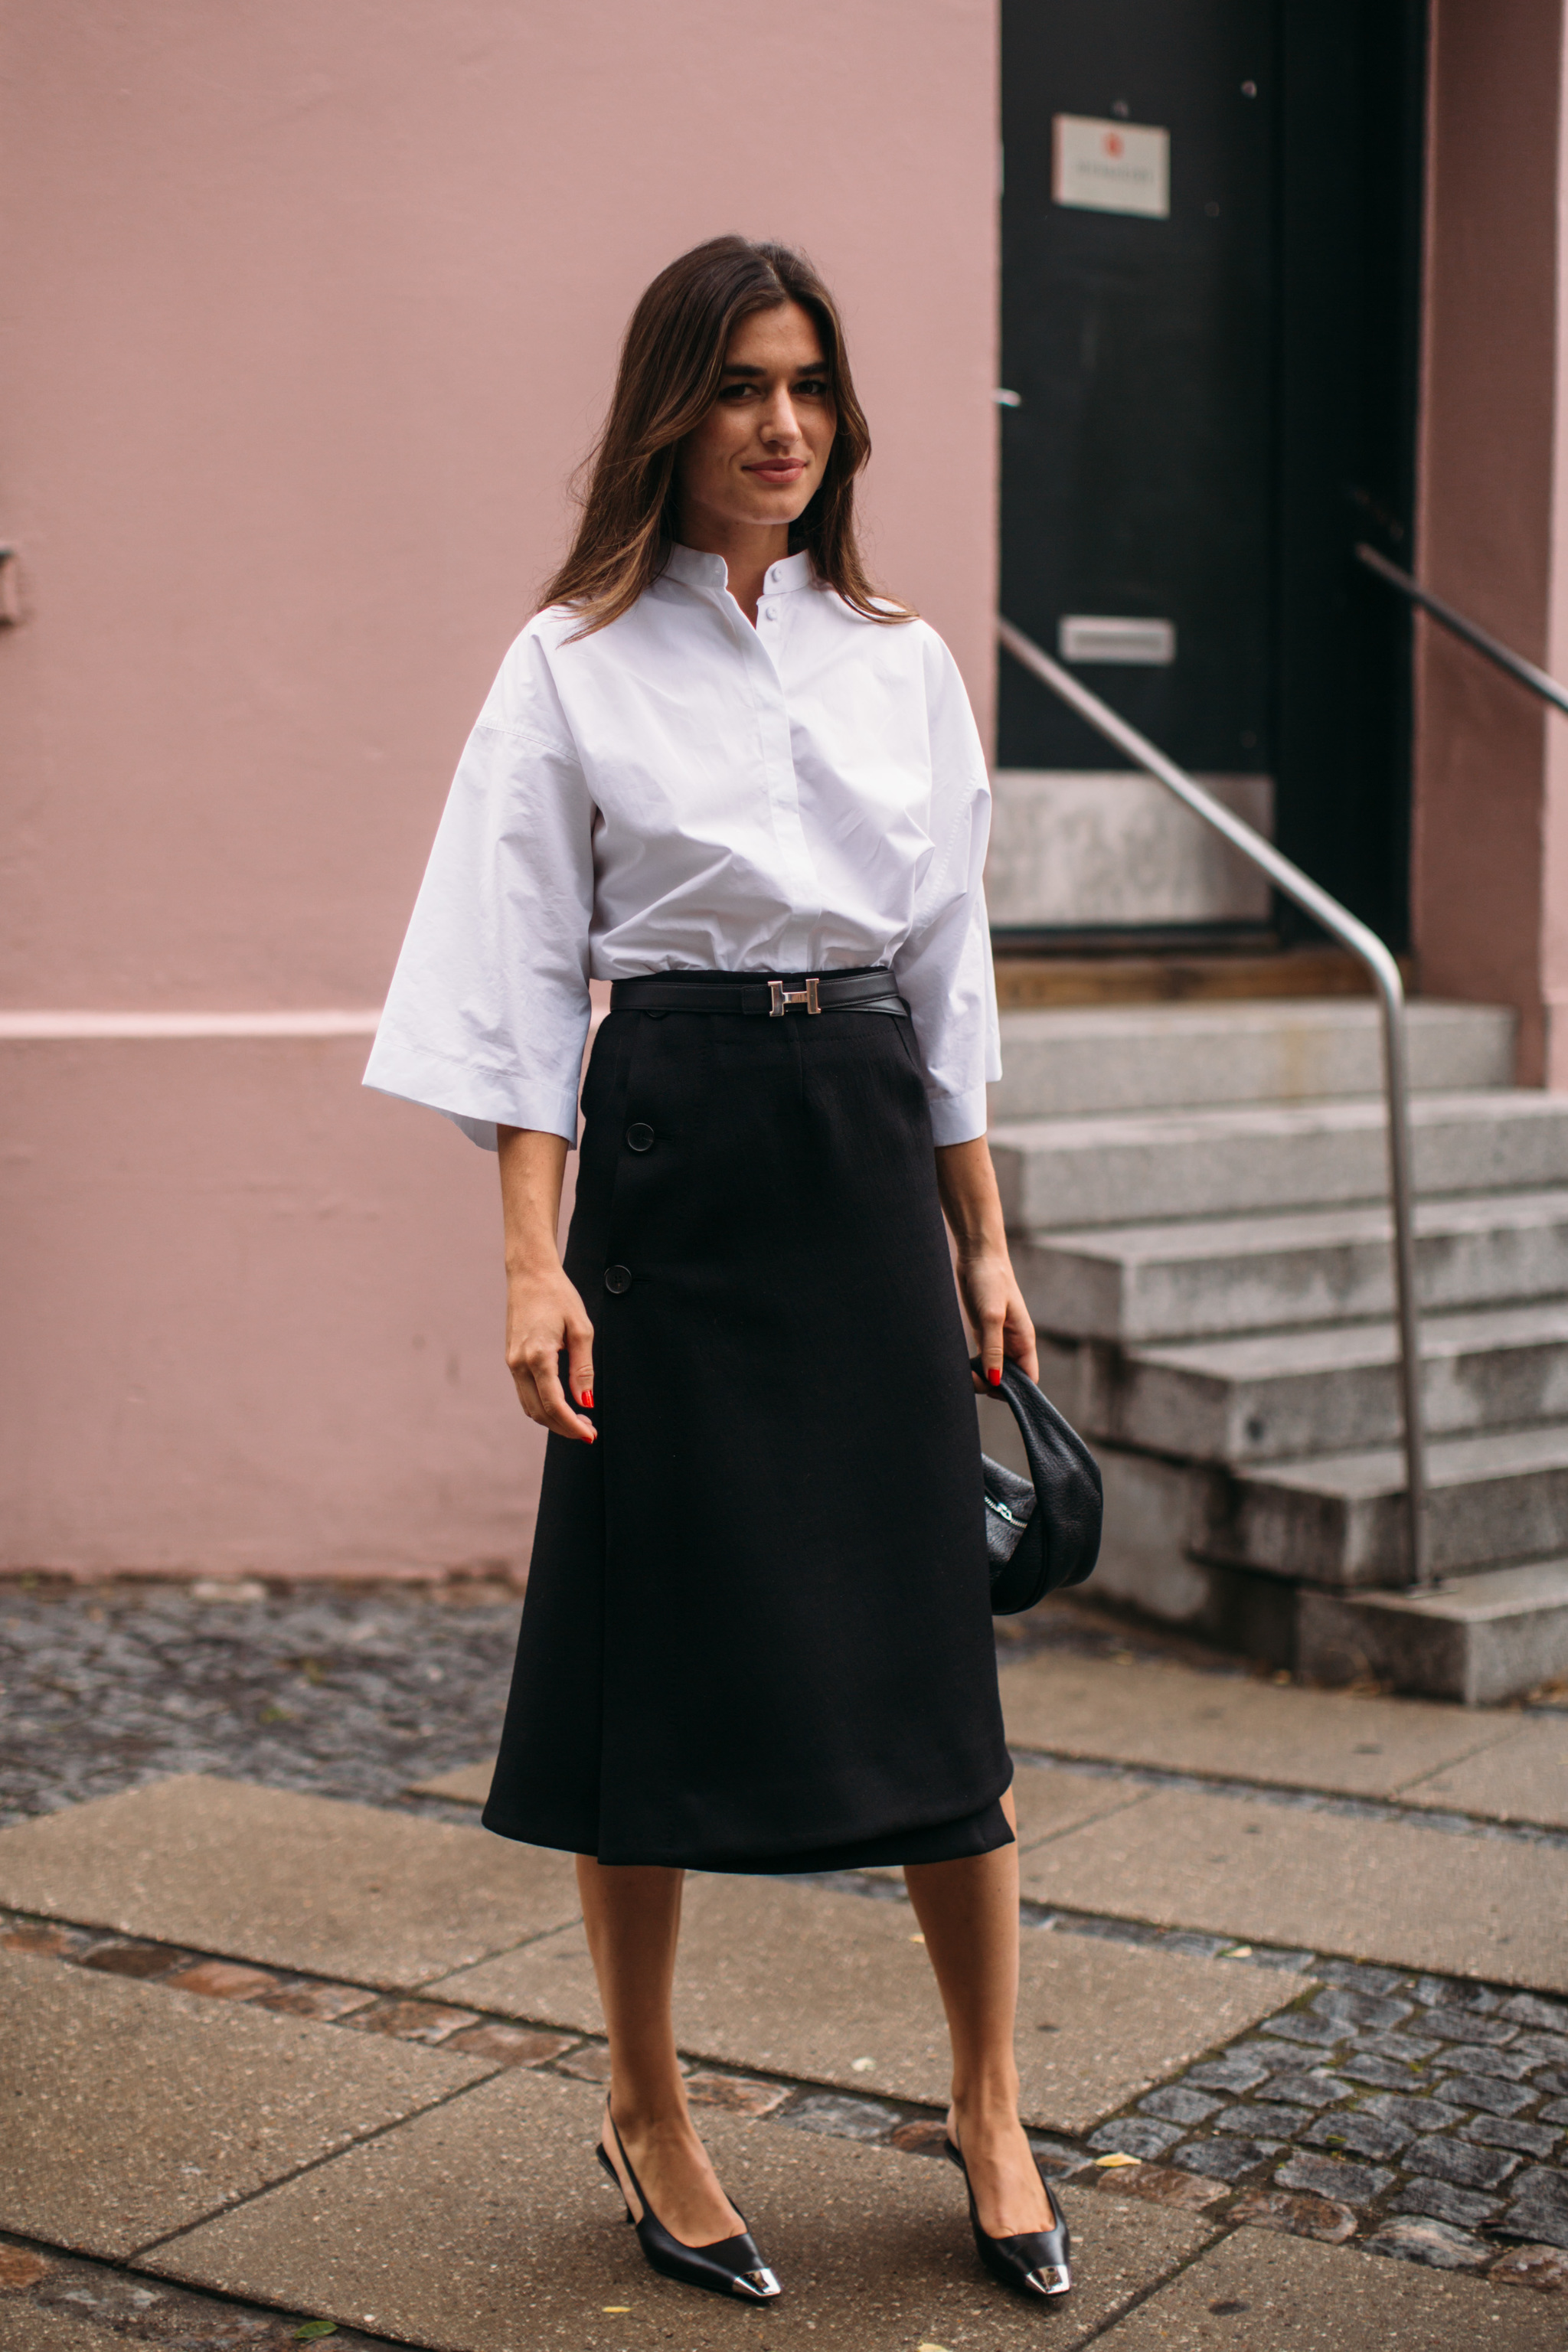 Ilirida Krasniqi con camisa blanca y falda negra, la combinación de color más clásica.